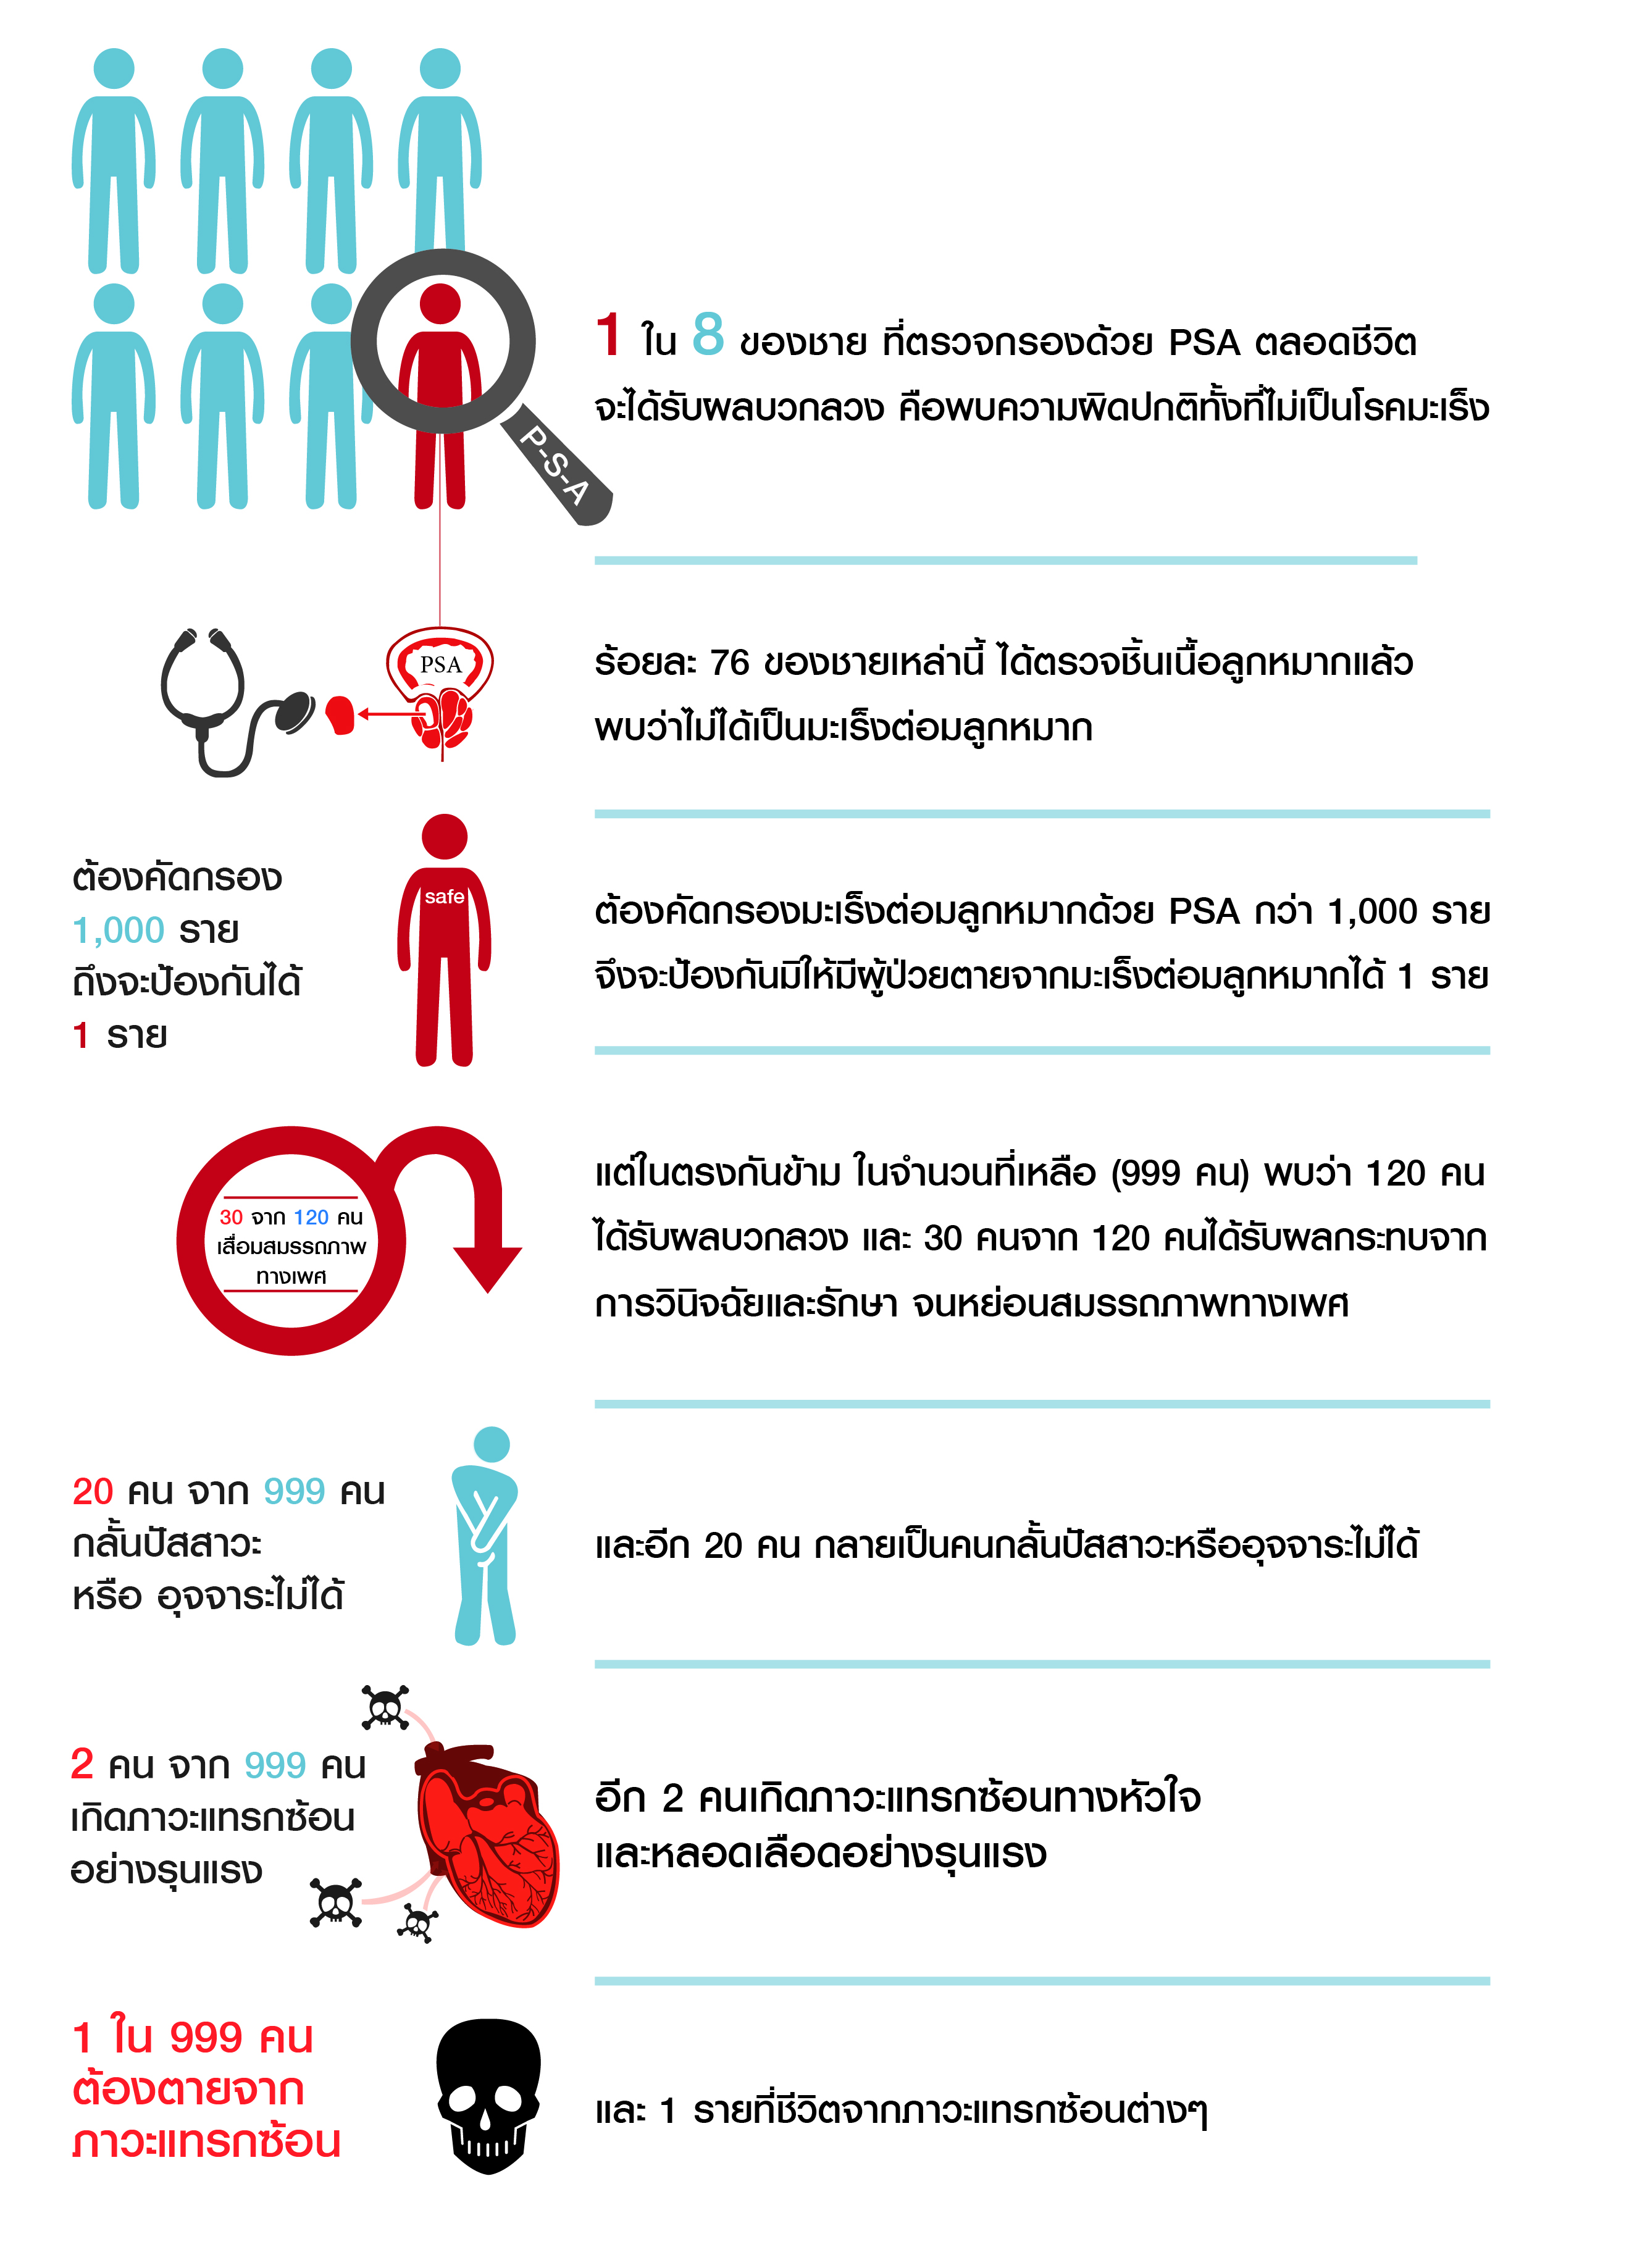 การศึกษาเพื่อพัฒนาชุดสิทธิประโยชน์ด้านการคัดกรองทางสุขภาพระดับประชากรในประเทศไทย